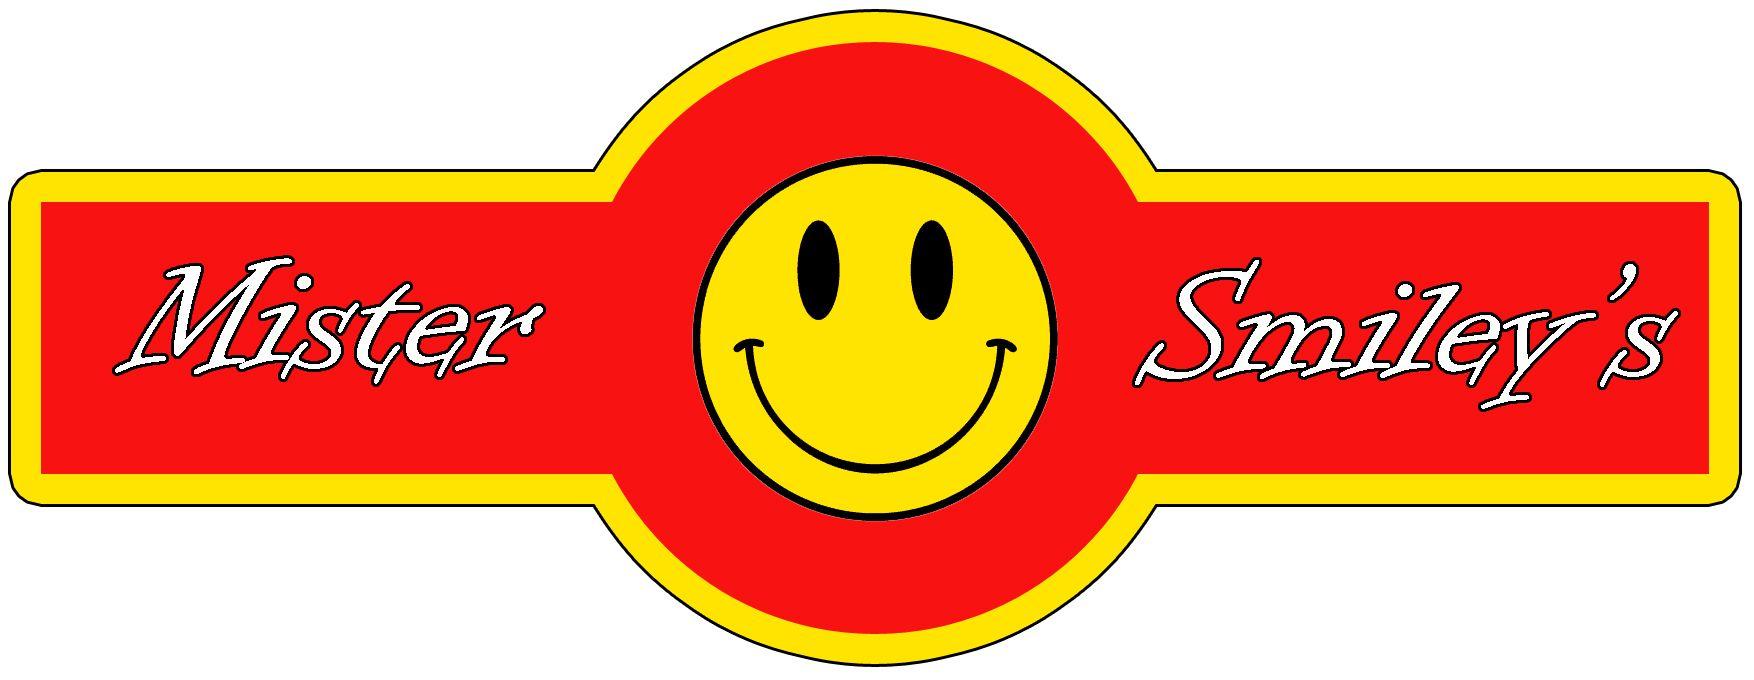 Red Smiley I Logo - Image - Mr Smiley's logo.jpg | Wikination | FANDOM powered by Wikia